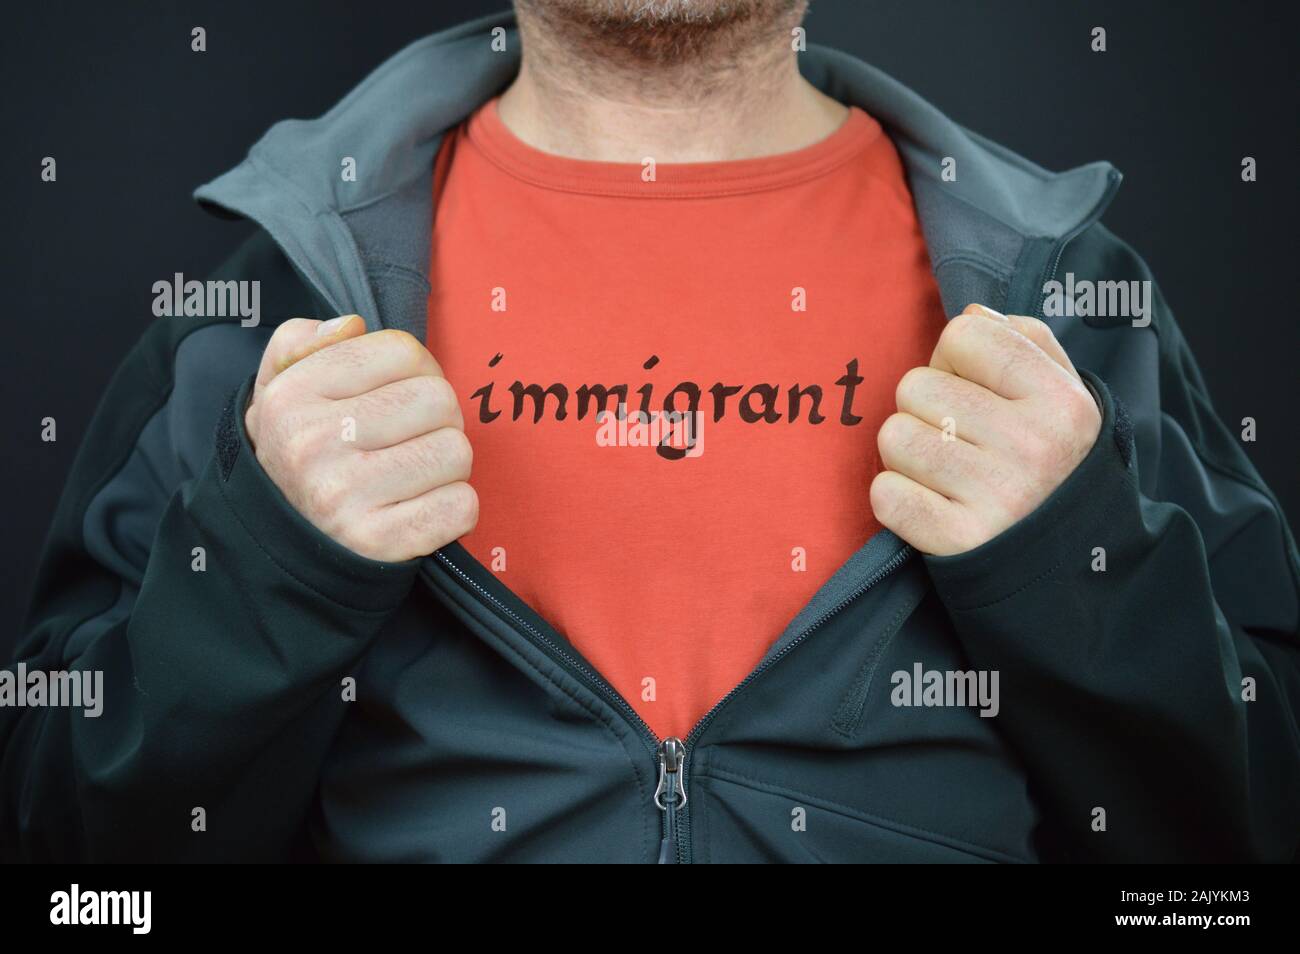 Un homme montrant son t-shirt avec le mot immigrant sur elle Banque D'Images